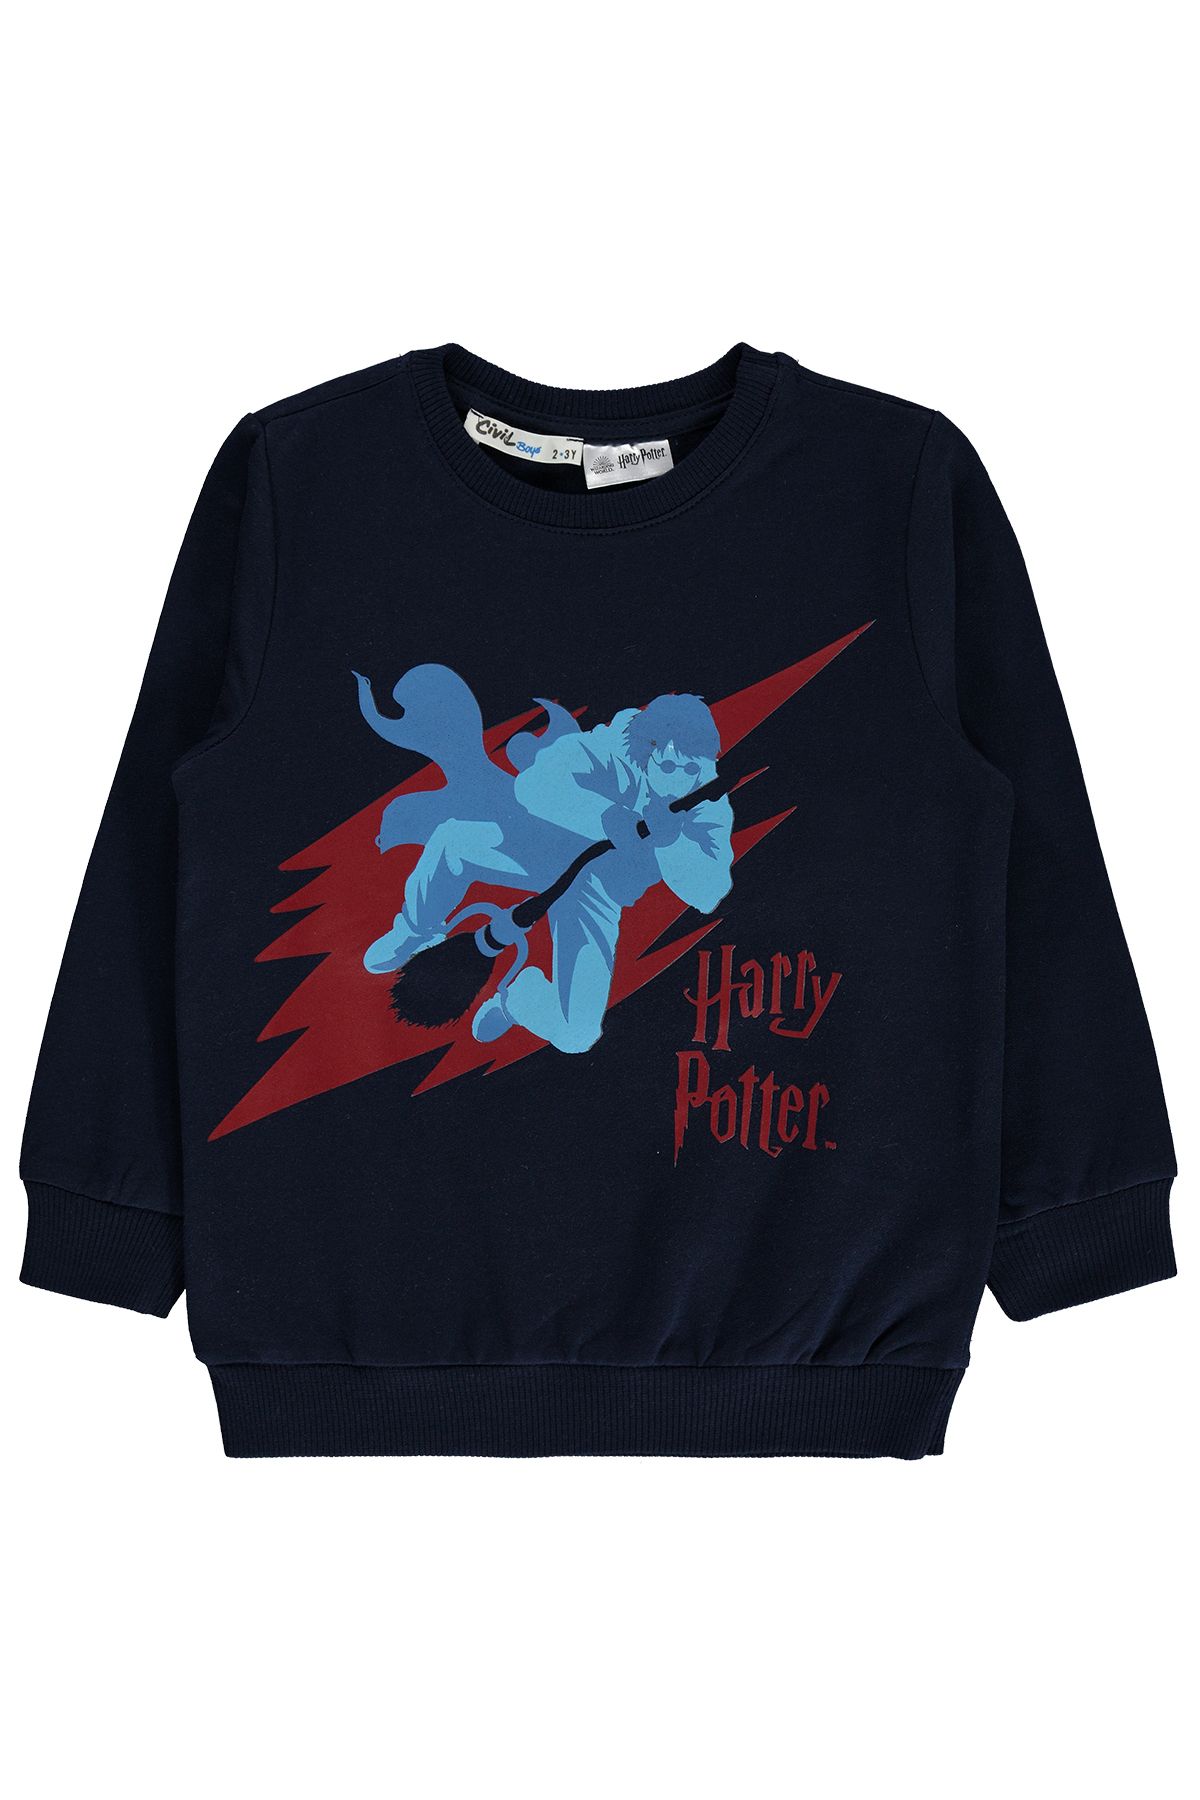 Harry Potter Erkek Çocuk Sweatshirt 2-5 Yaş Lacivert